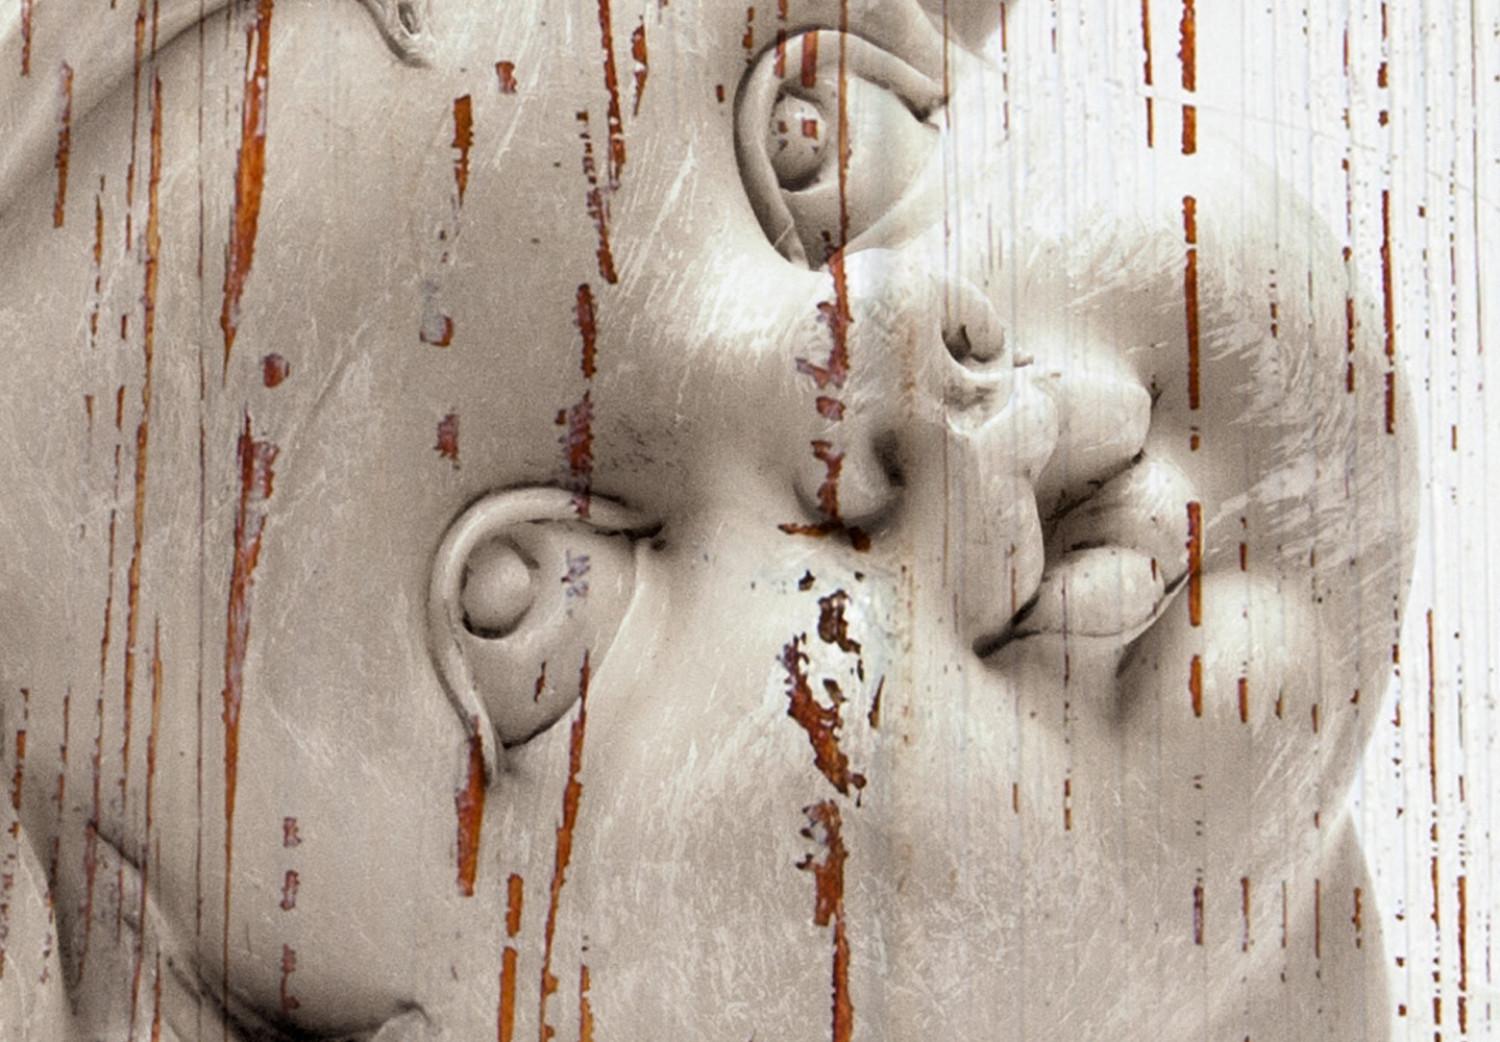 Póster Amor meditativo - escultura de ángel de piedra (Fondo de madera)